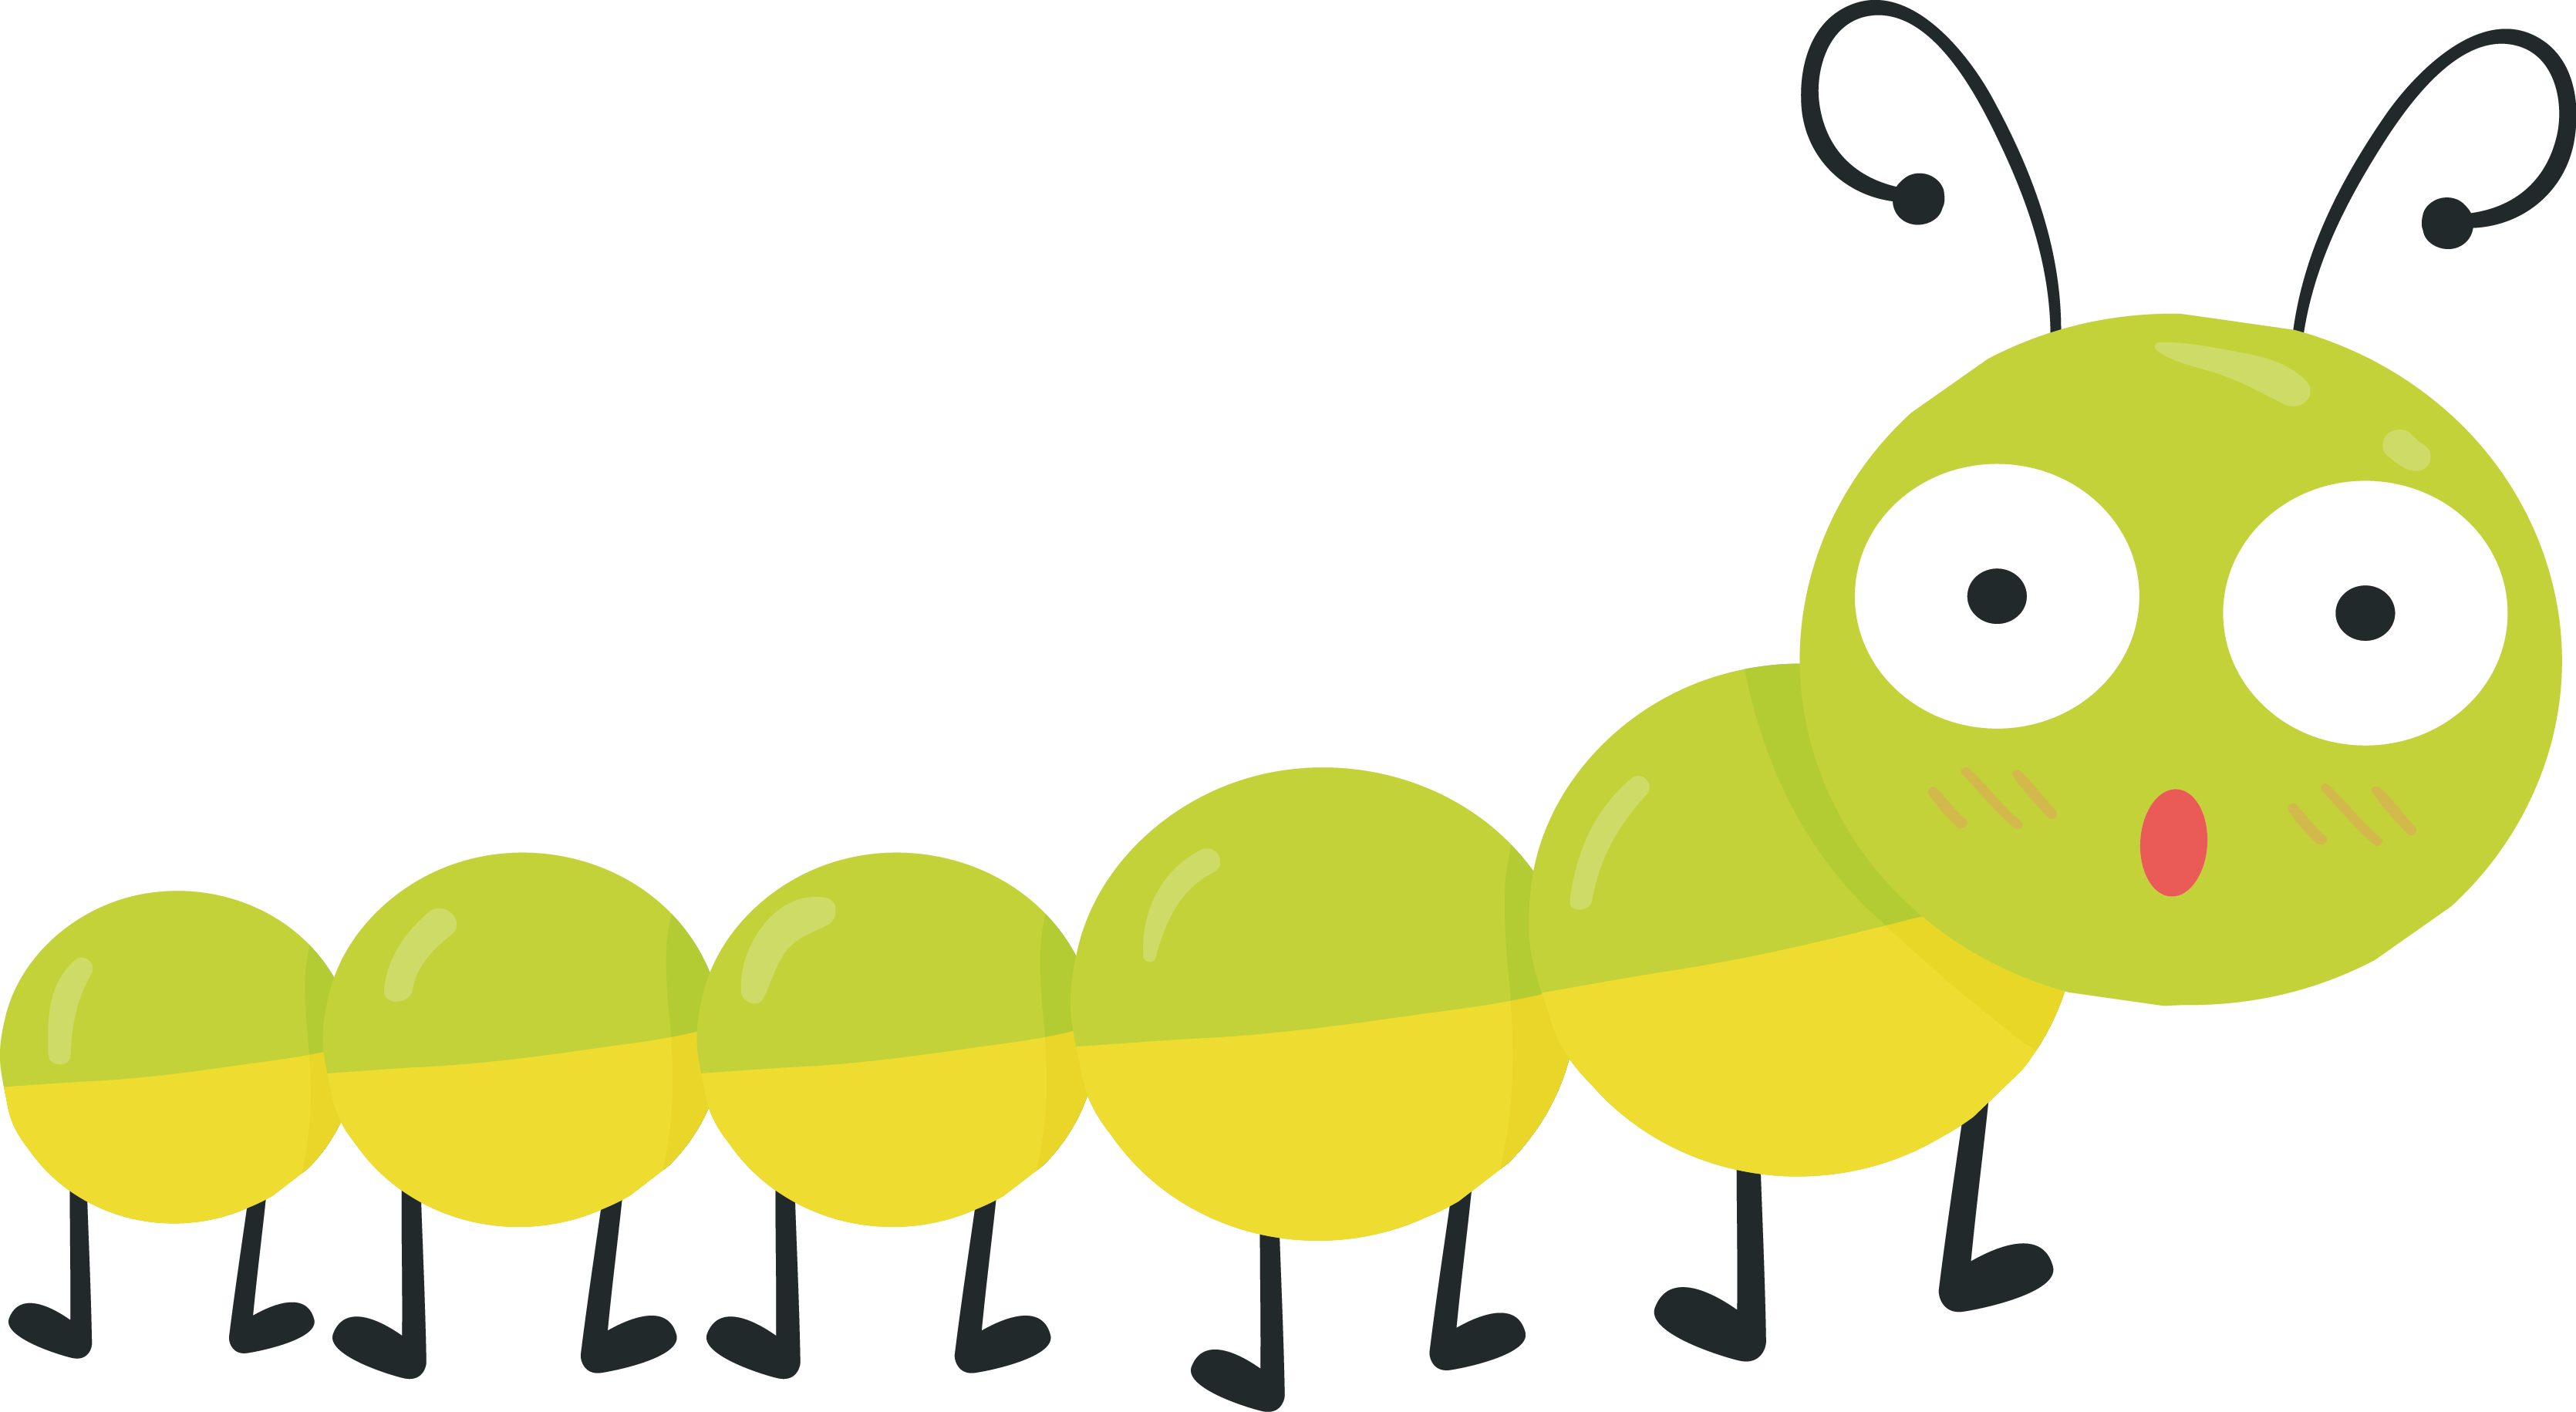 Cartoon caterpillar cartoon.